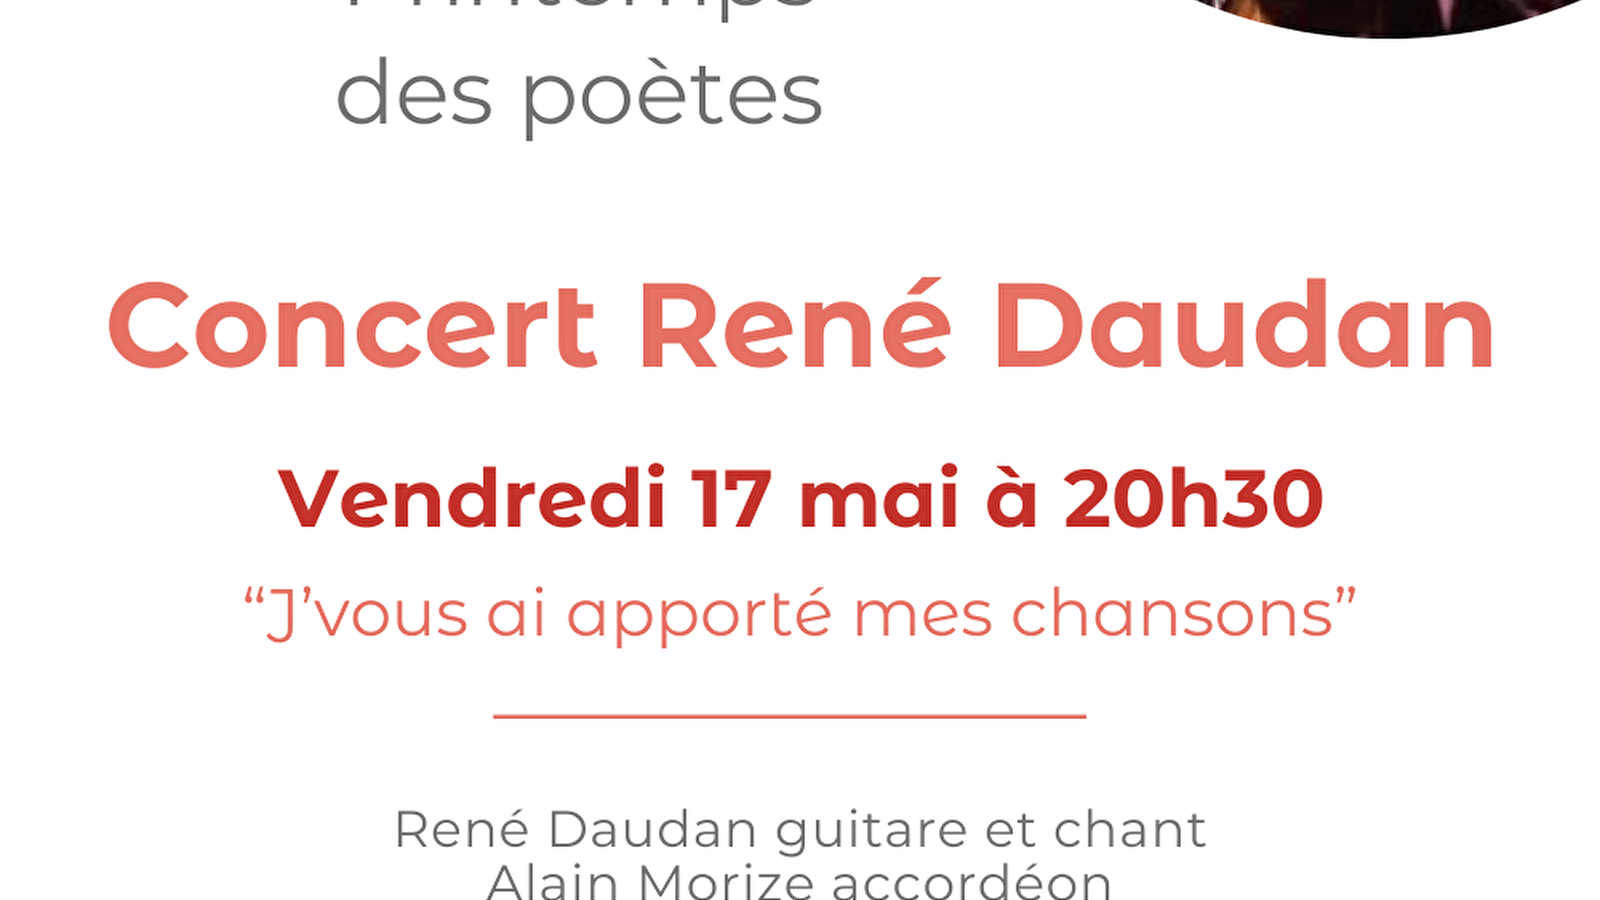 Concert de René Daudan à Précy-sous-Thil